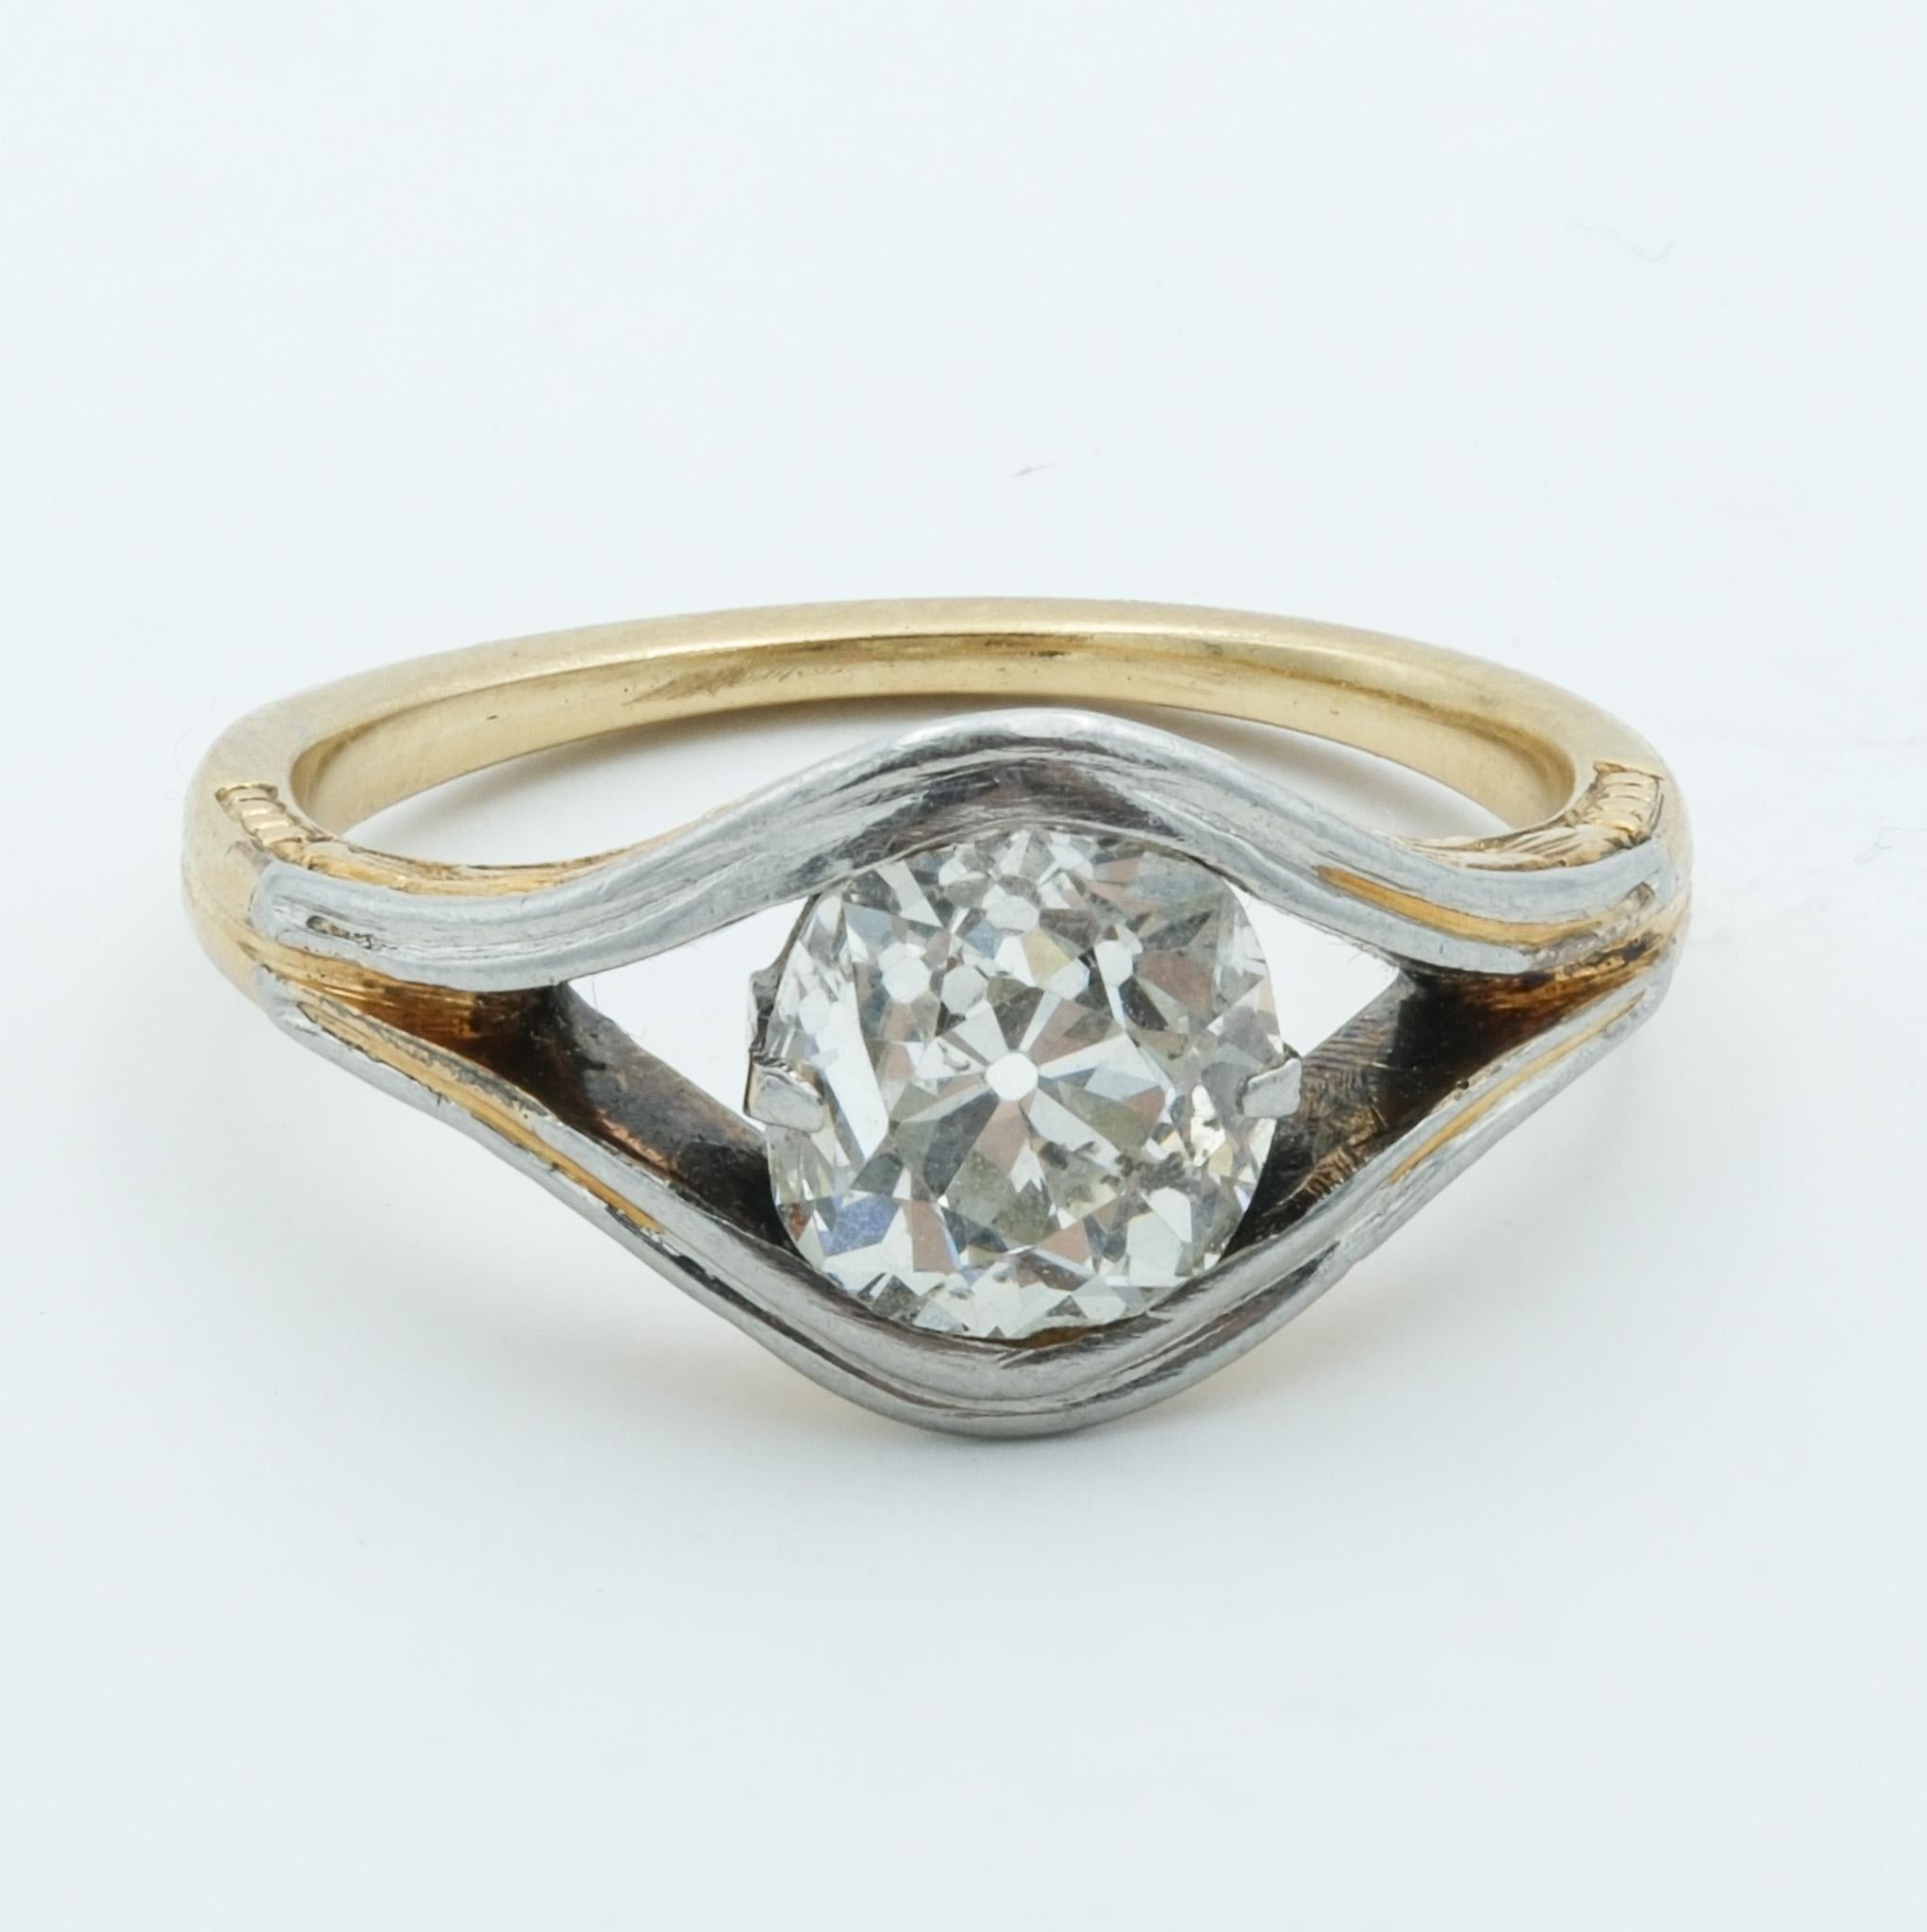 Dieser exquisite edwardianische Verlobungsring präsentiert einen luxuriösen Diamanten im Altminenschliff, der mit seinen beeindruckenden Facetten und seiner außergewöhnlichen Brillanz im Mittelpunkt des Geschehens strahlt. Der Diamant ist kunstvoll